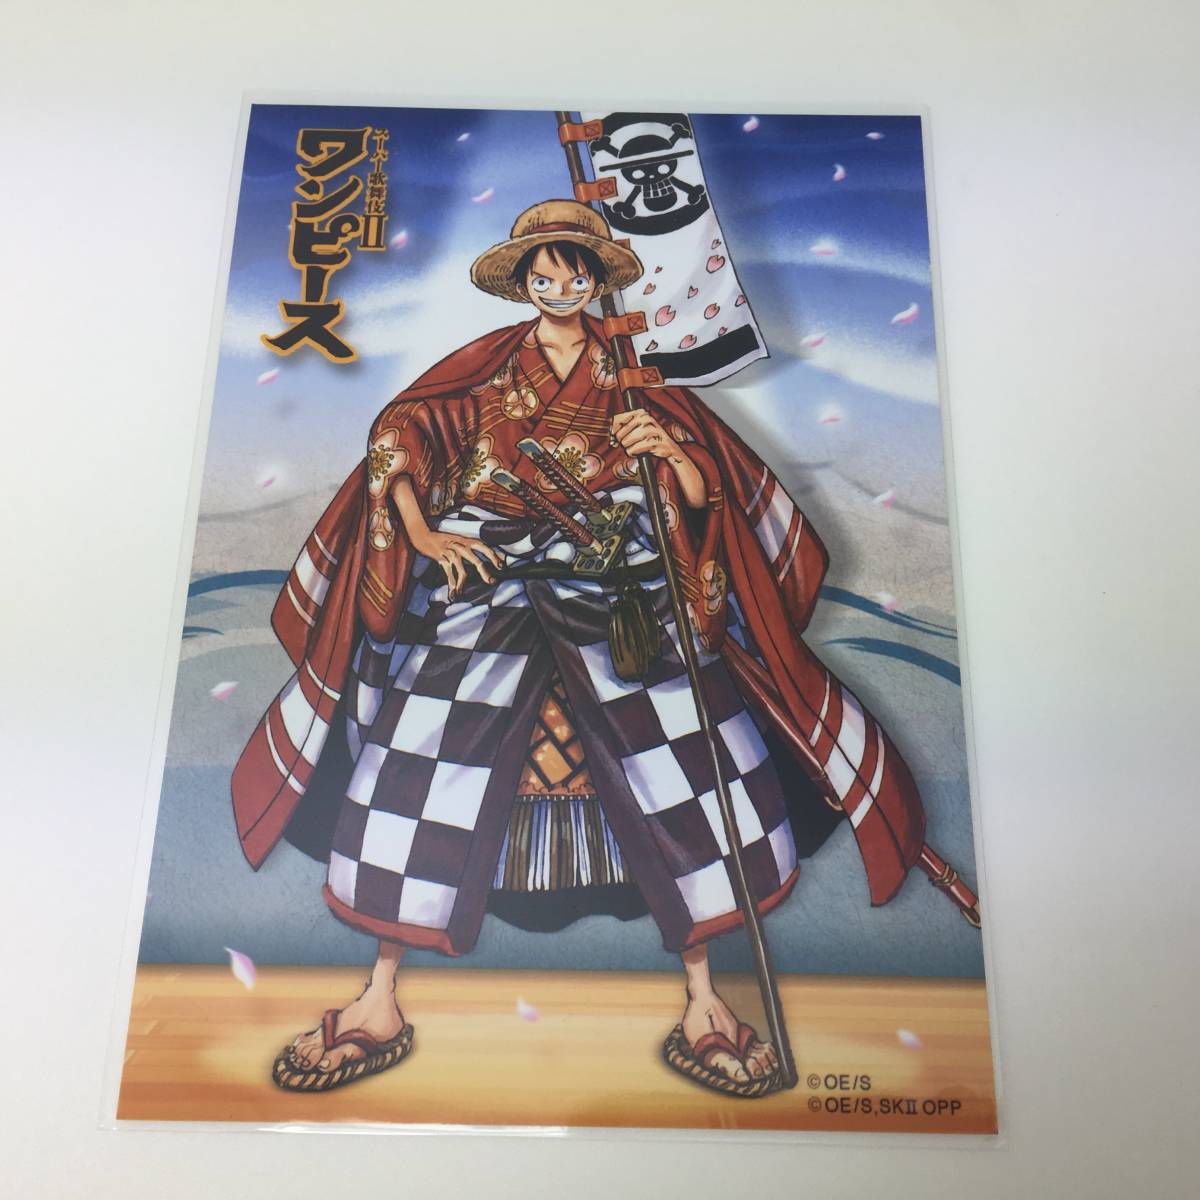 ワンピース One Piece スーパー歌舞伎 ブロマイド ルフィ コミック アニメグッズ 売買されたオークション情報 Yahooの商品情報をアーカイブ公開 オークファン Aucfan Com